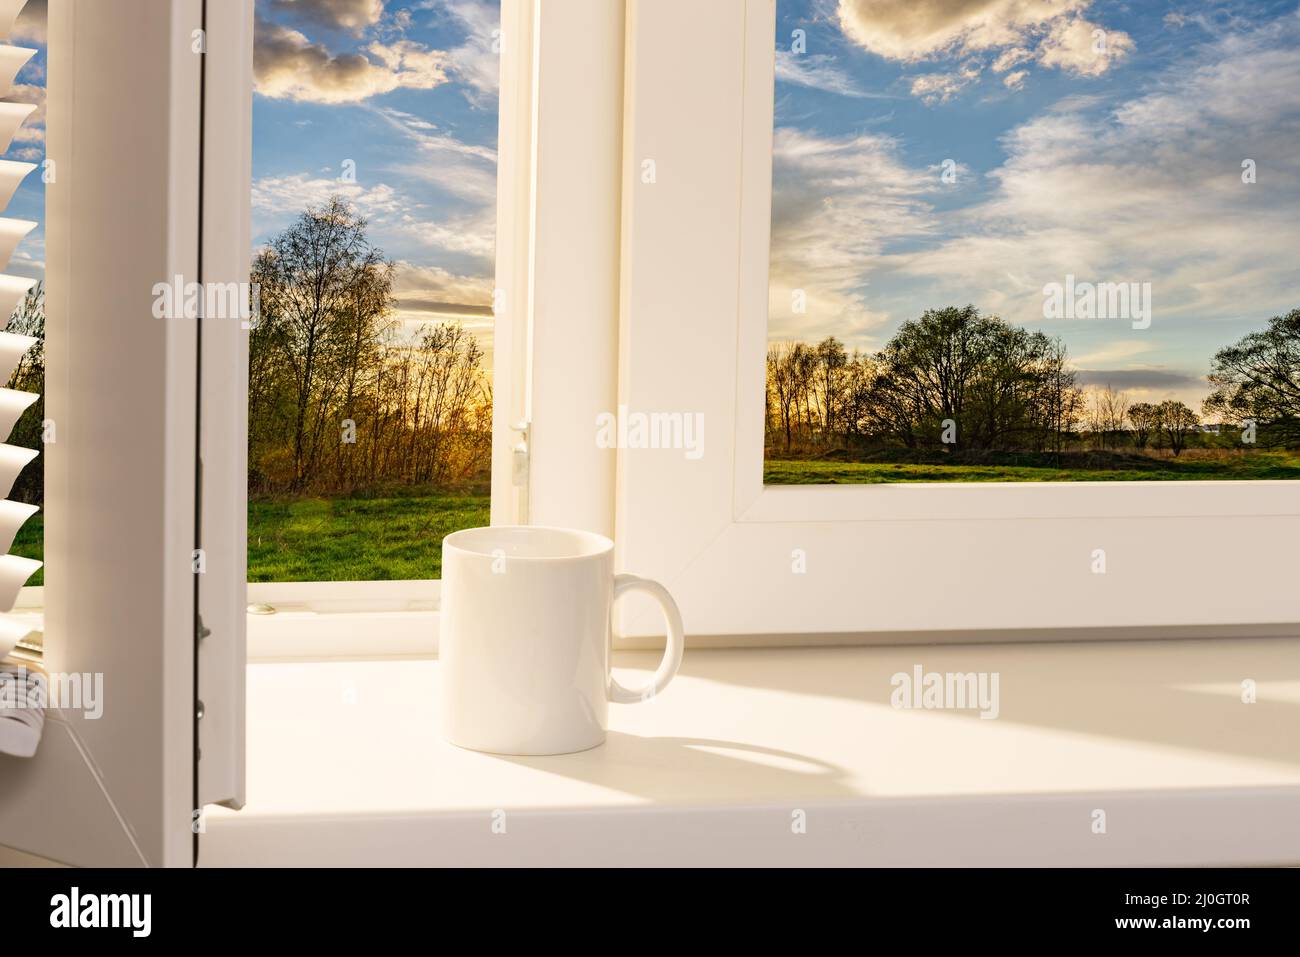 Ouvrez la fenêtre avec une tasse de café sur le rebord de la fenêtre Banque D'Images